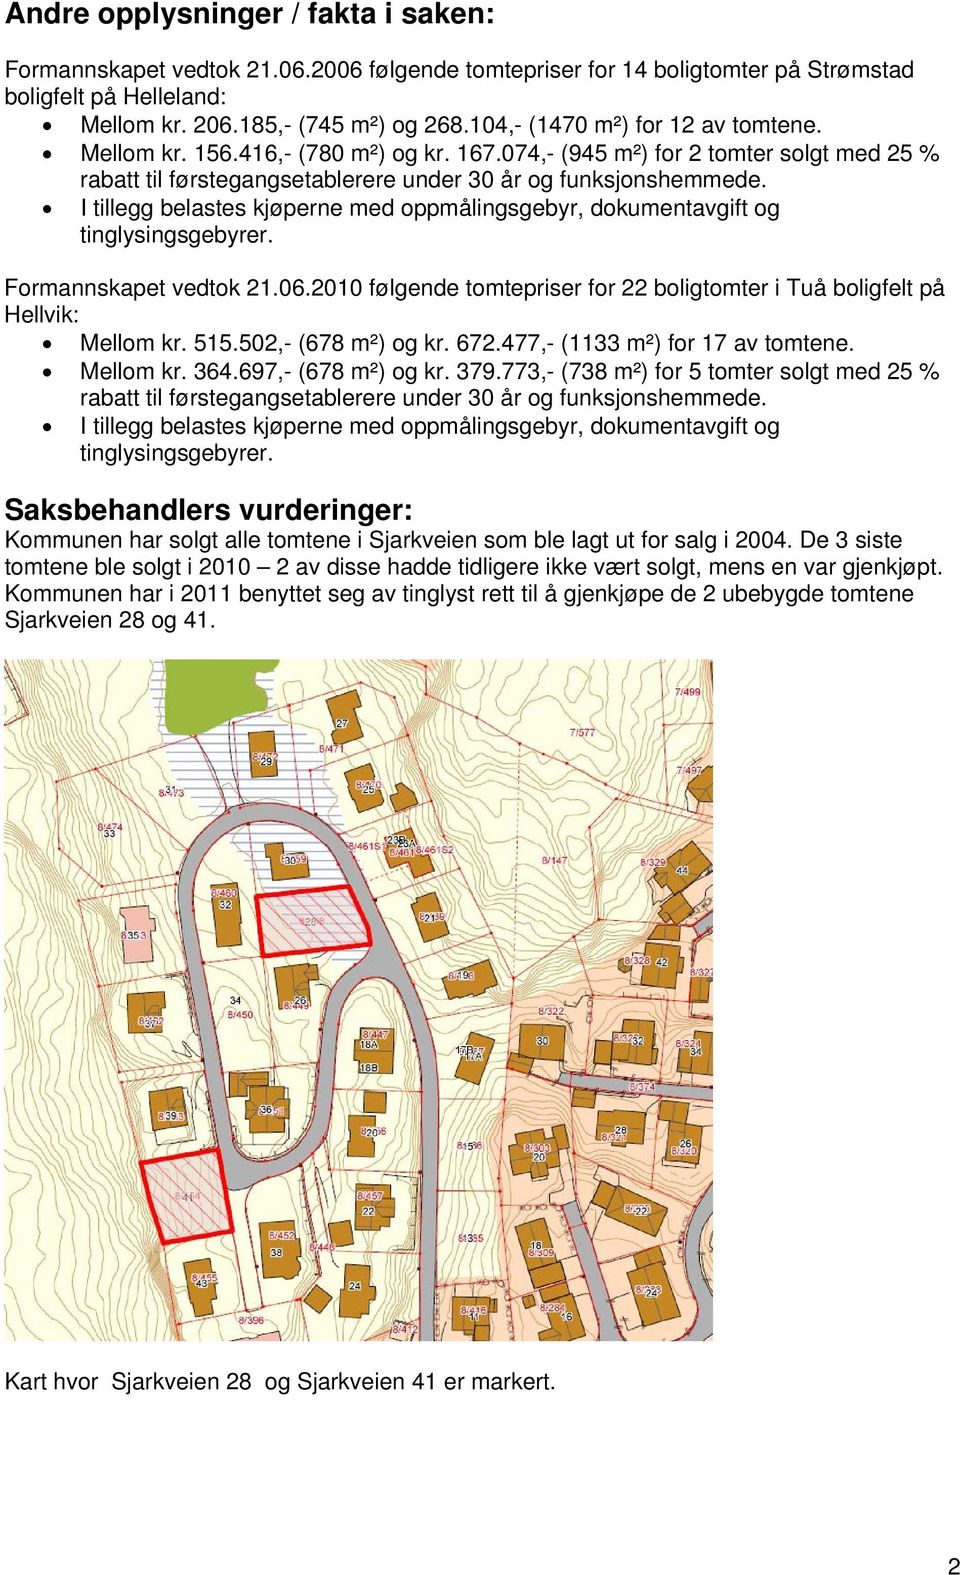 Formannskapet vedtok 21.06.2010 følgende tomtepriser for 22 boligtomter i Tuå boligfelt på Hellvik: Mellom kr. 515.502,- (678 m²) og kr. 672.477,- (1133 m²) for 17 av tomtene. Mellom kr. 364.